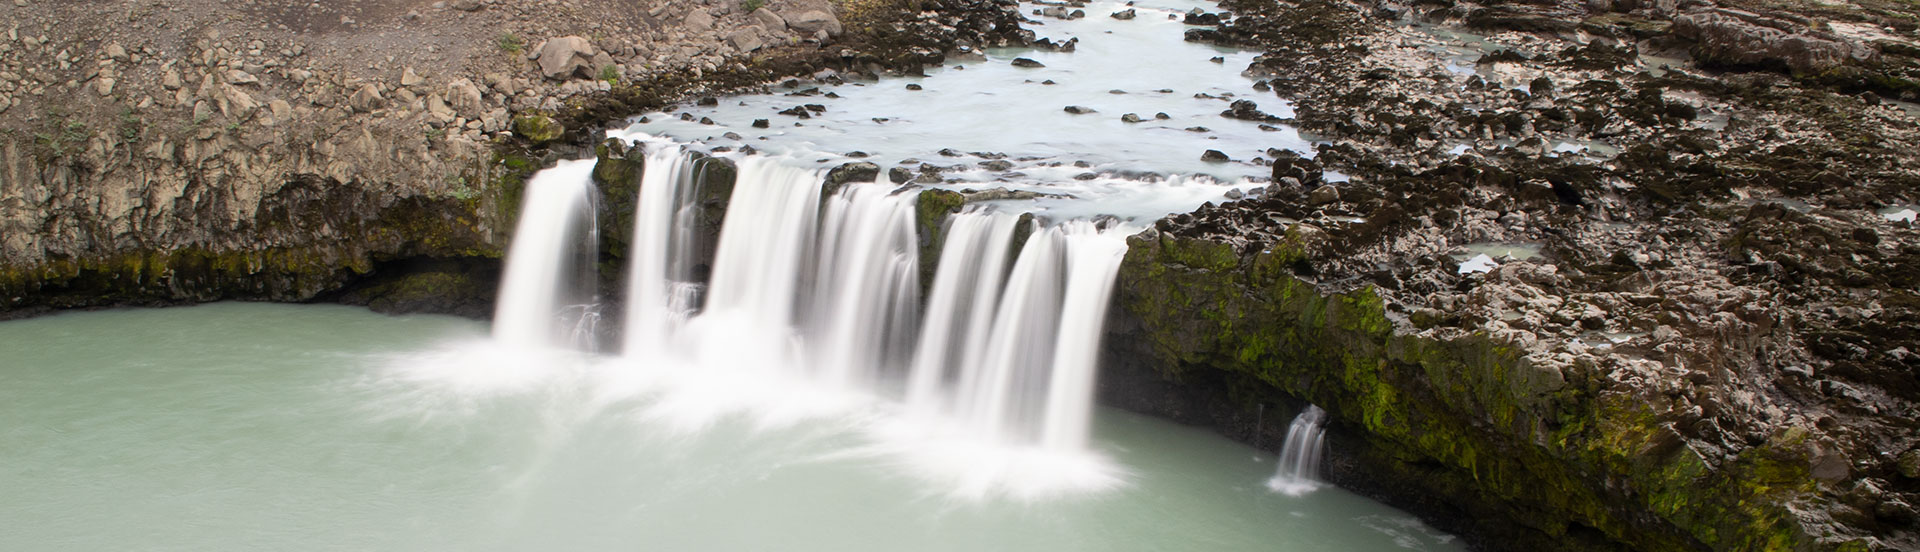 Þjófafoss waterfall